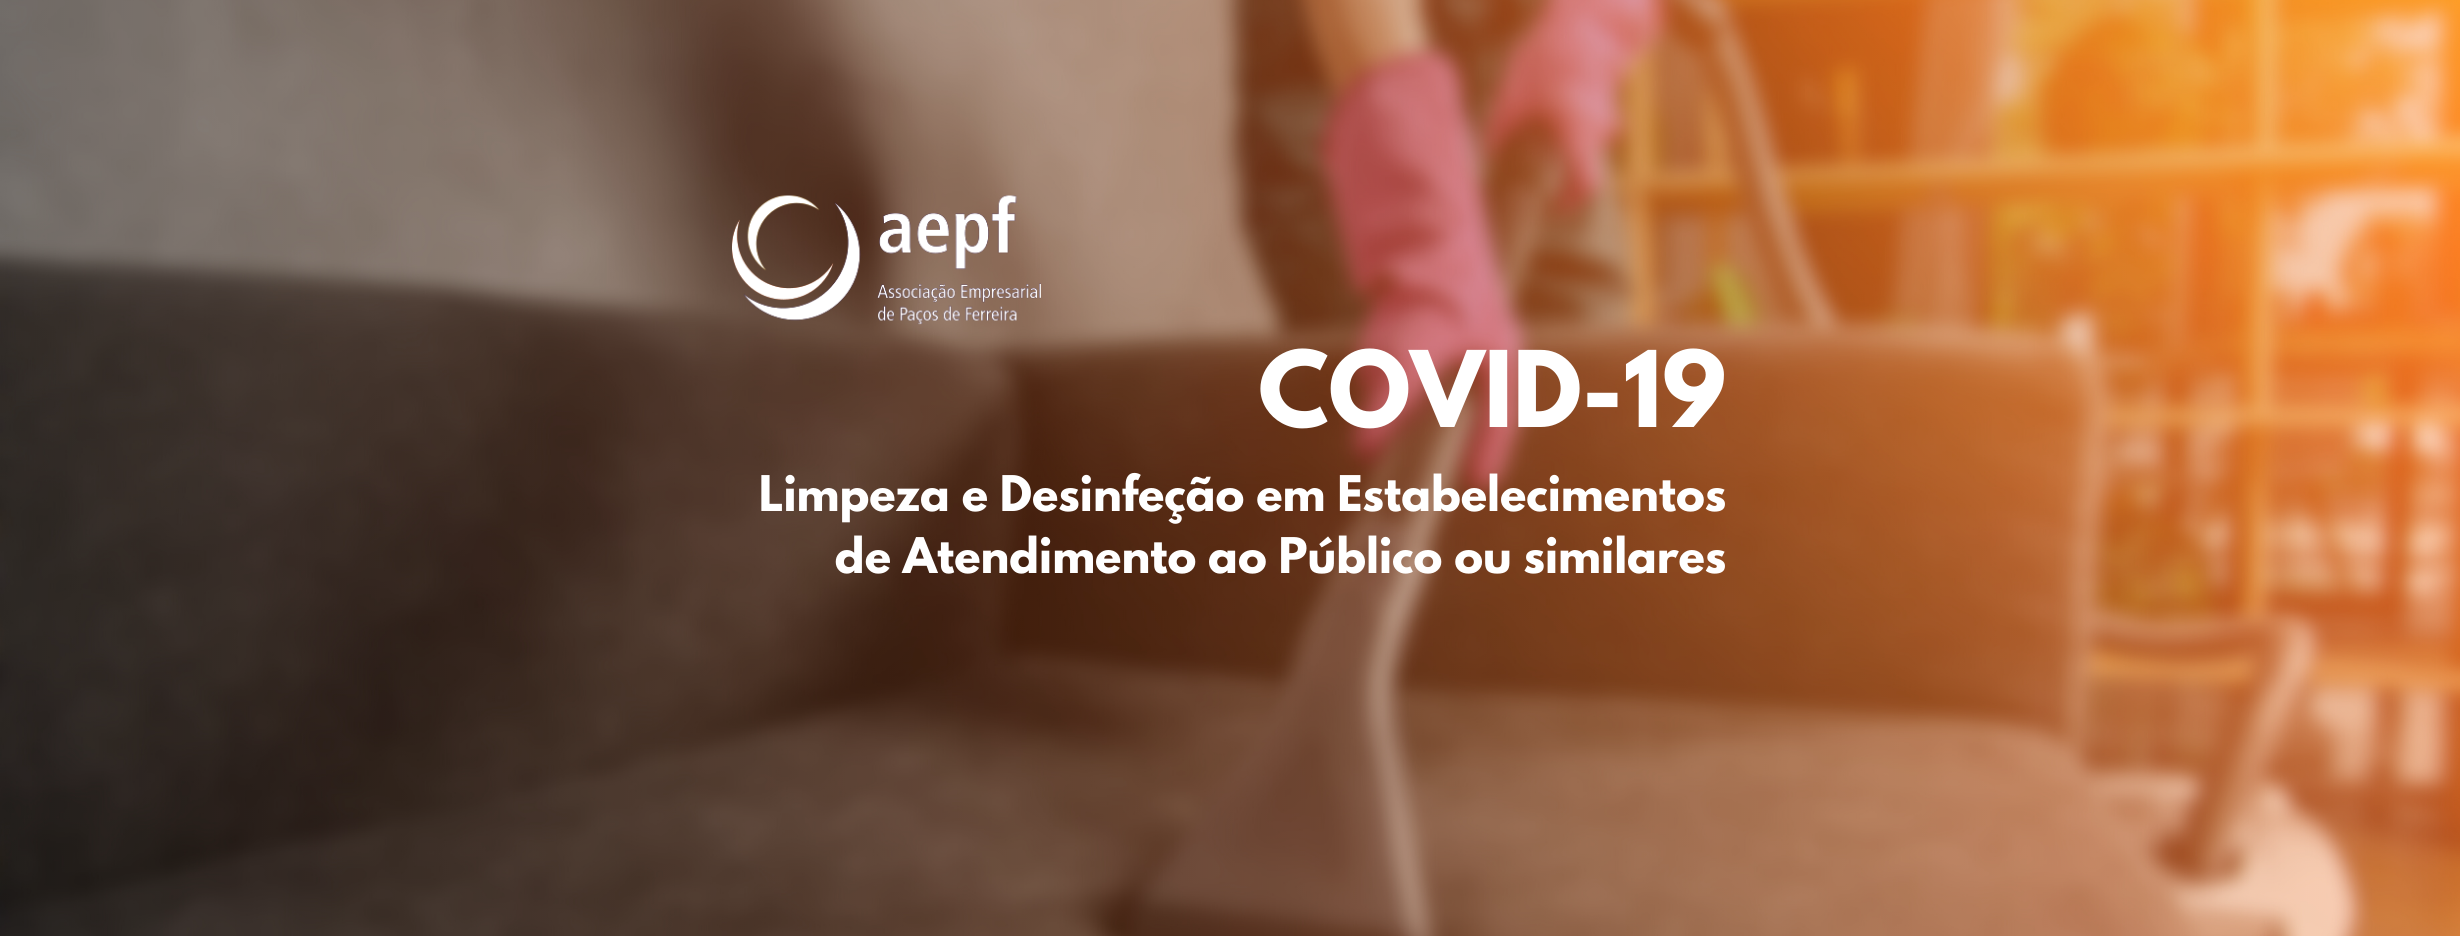 COVID-19: Limpeza e Desinfeção em Estabelecimentos de Atendimento ao Público ou similares